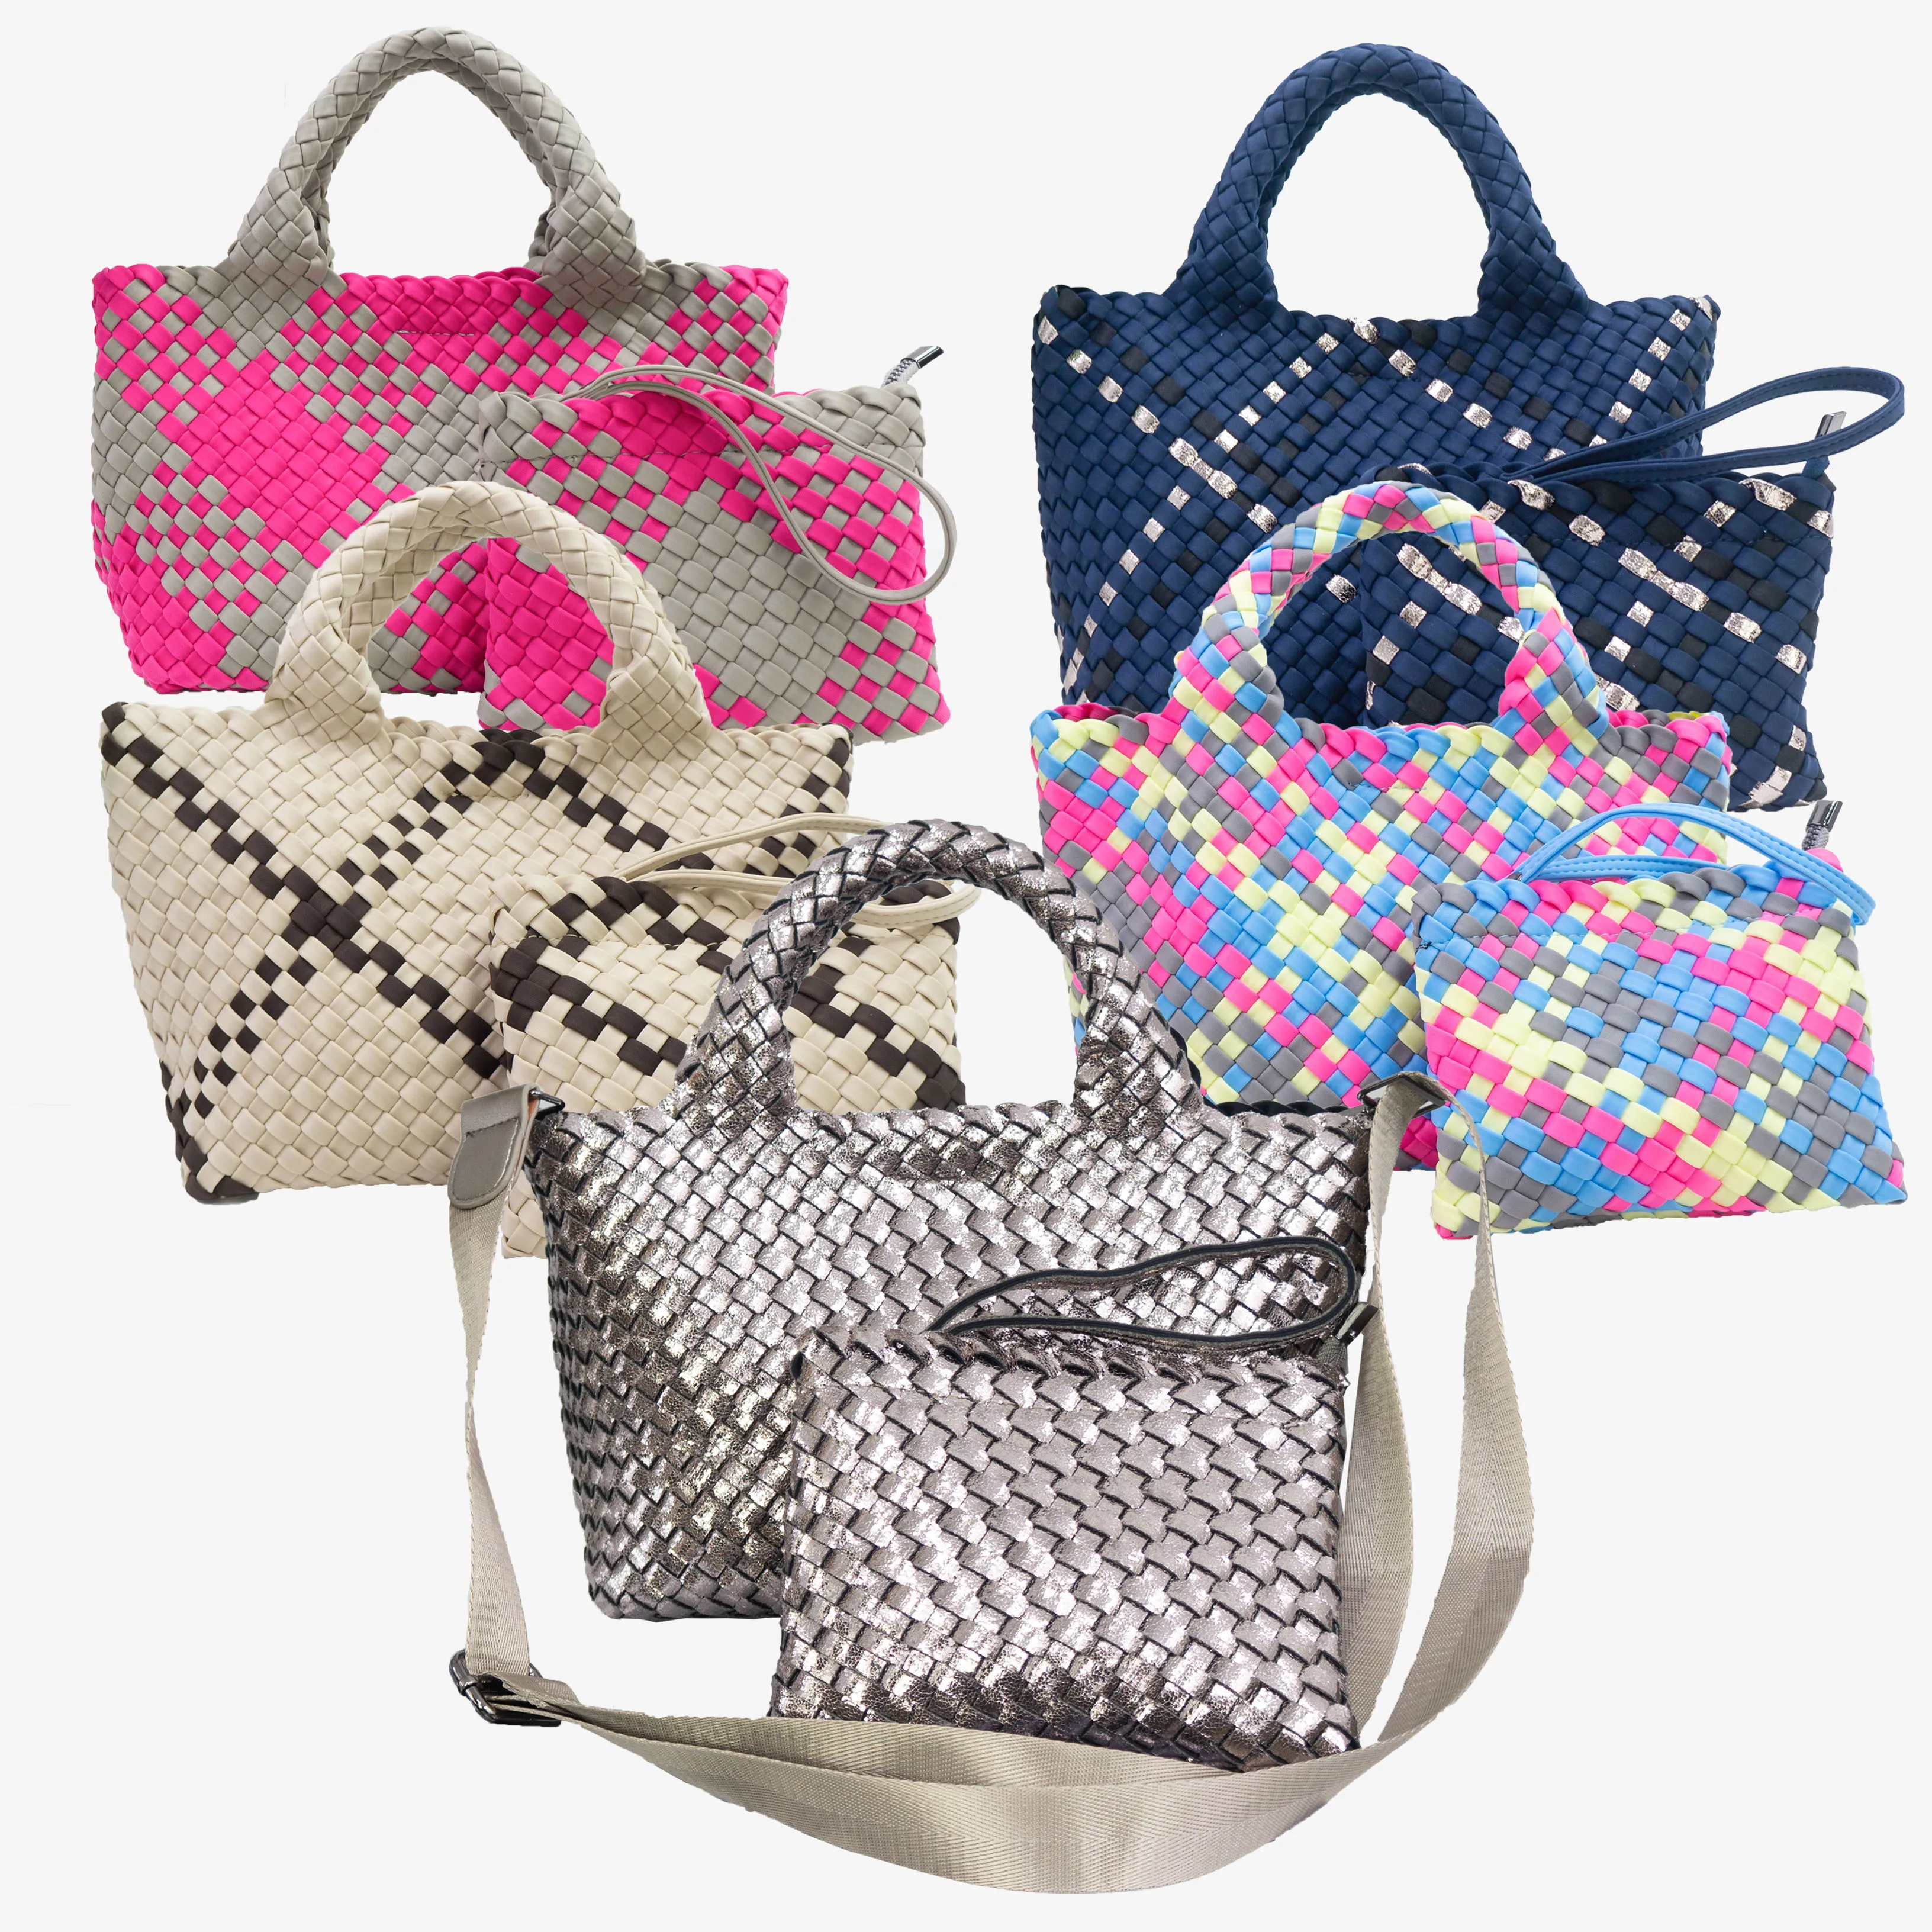 

HONOUR ME Luxury Spring Neoprene Woven Handbag Soft Beach Cross Body Bag Custom Make Hand Weave Tote Bag